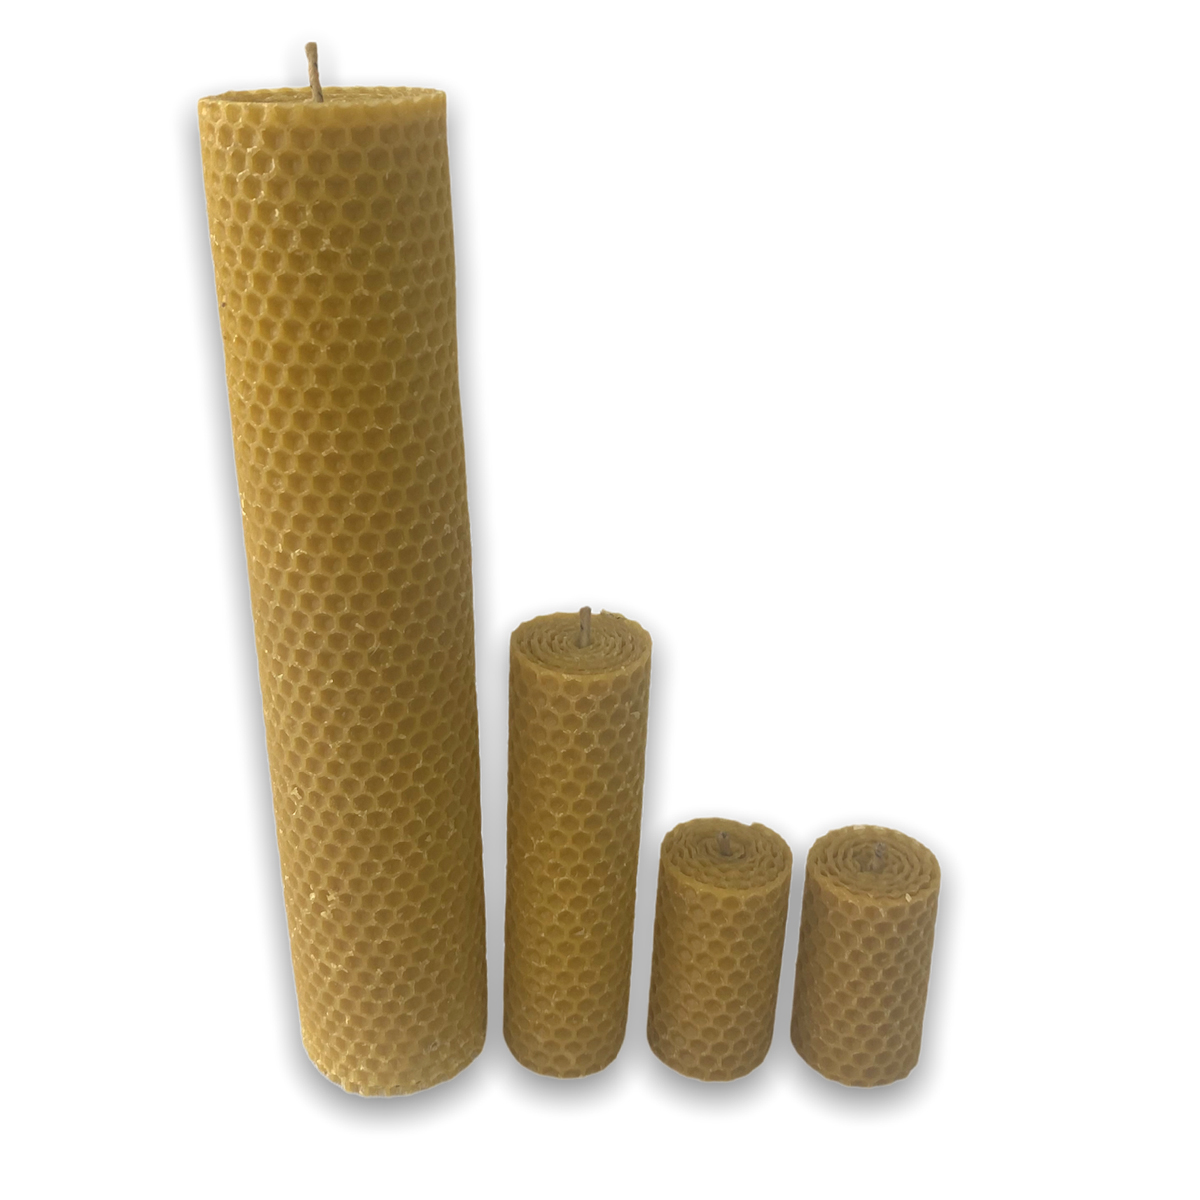 Velas de cera de abeja con miel, paquete de 4 piezas. Zumbido de Monte -  Tienda Hecho en Veracruz